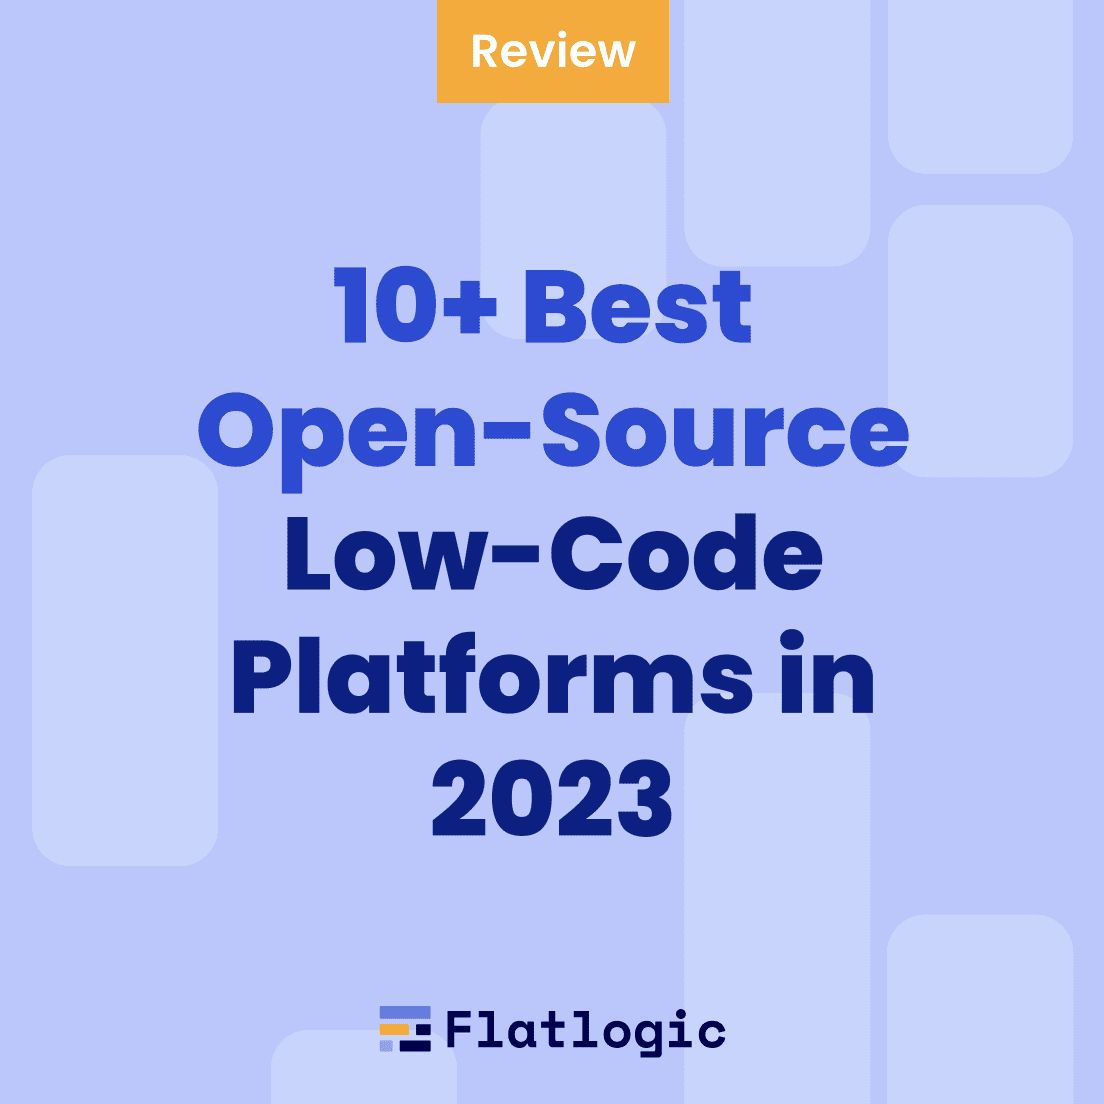 10+ Best Open-Source Low-Code Platforms in 2023